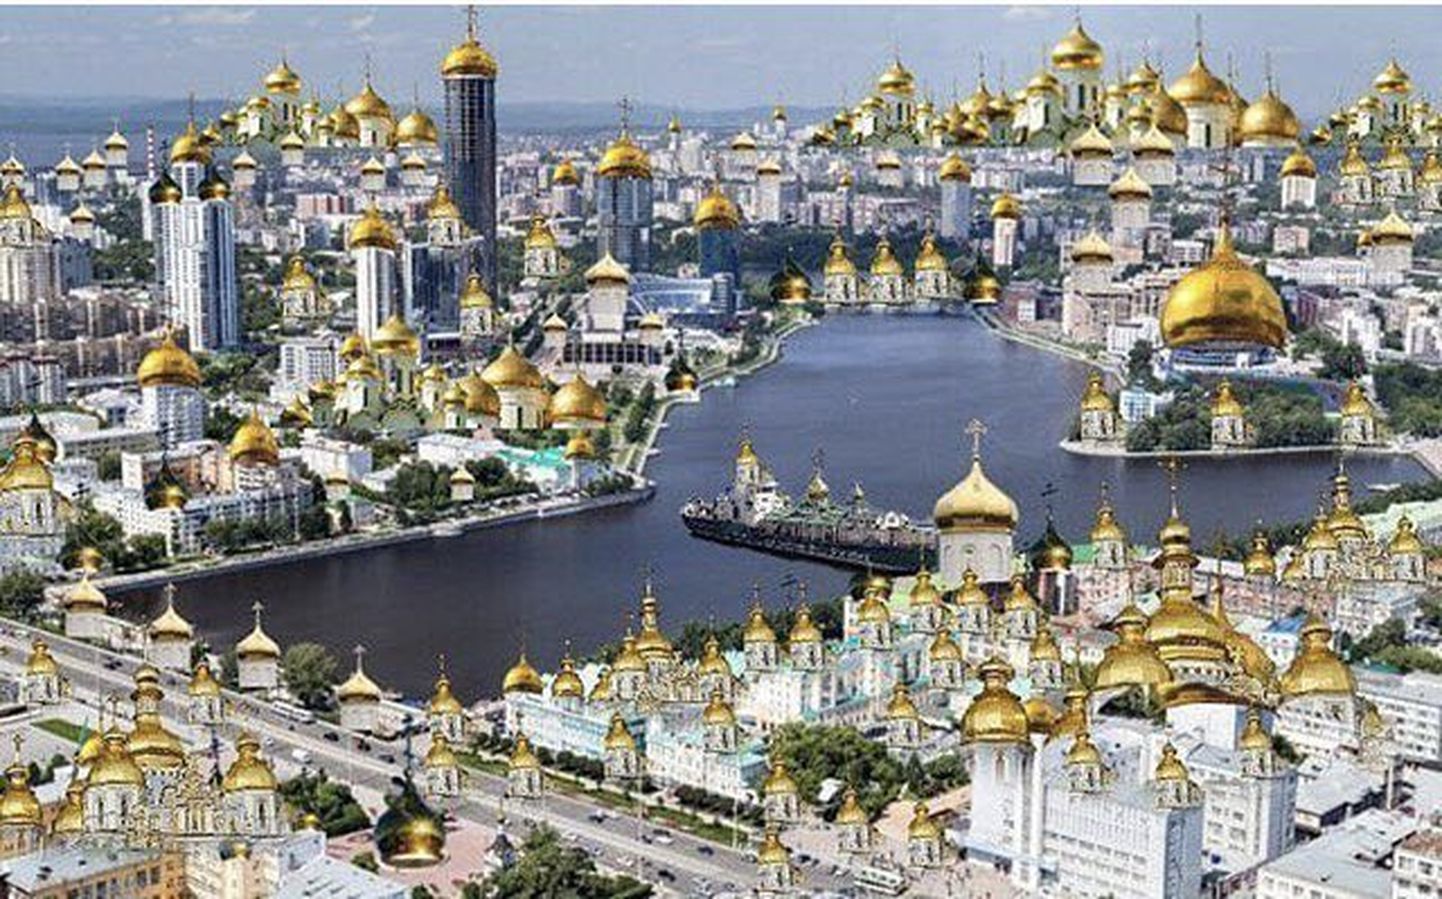 Üks sotsiaalmeedia naljaportaal ennustab, et Jekaterinburg on 2030. aastaks täielikult kaetud õigeusu kirikutega. Pilt tugineb Vene õigeusu kiriku patriarhi Kirilli sõnadele, mille kohaselt avatakse iga päev kolm uut kirikut.